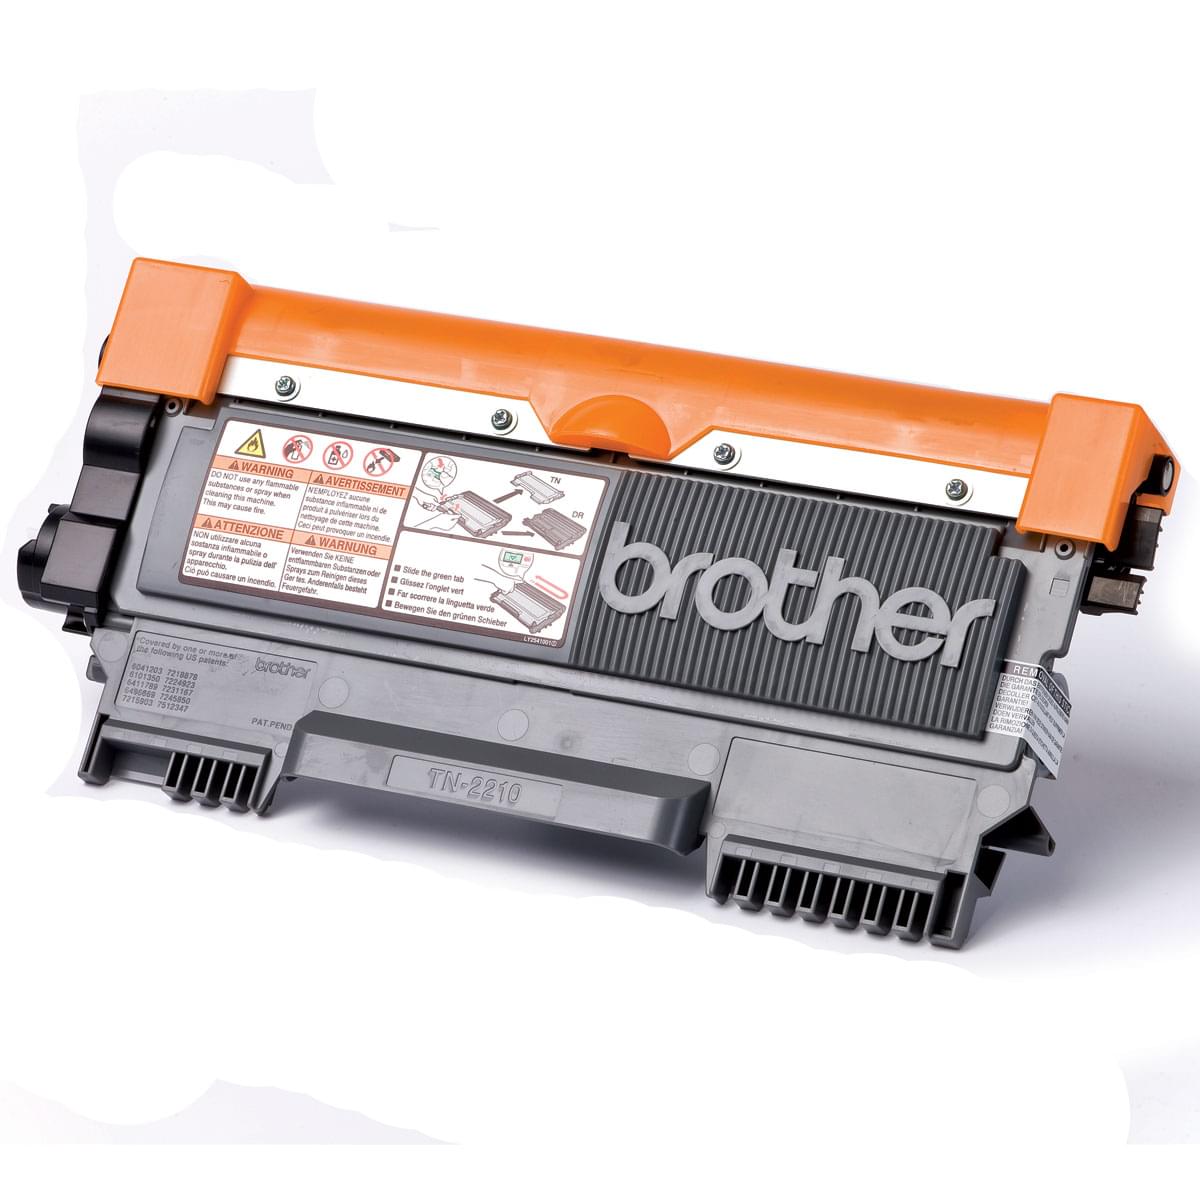 Toner Noir 1200p - TN-2210 pour imprimante Laser Brother - 0